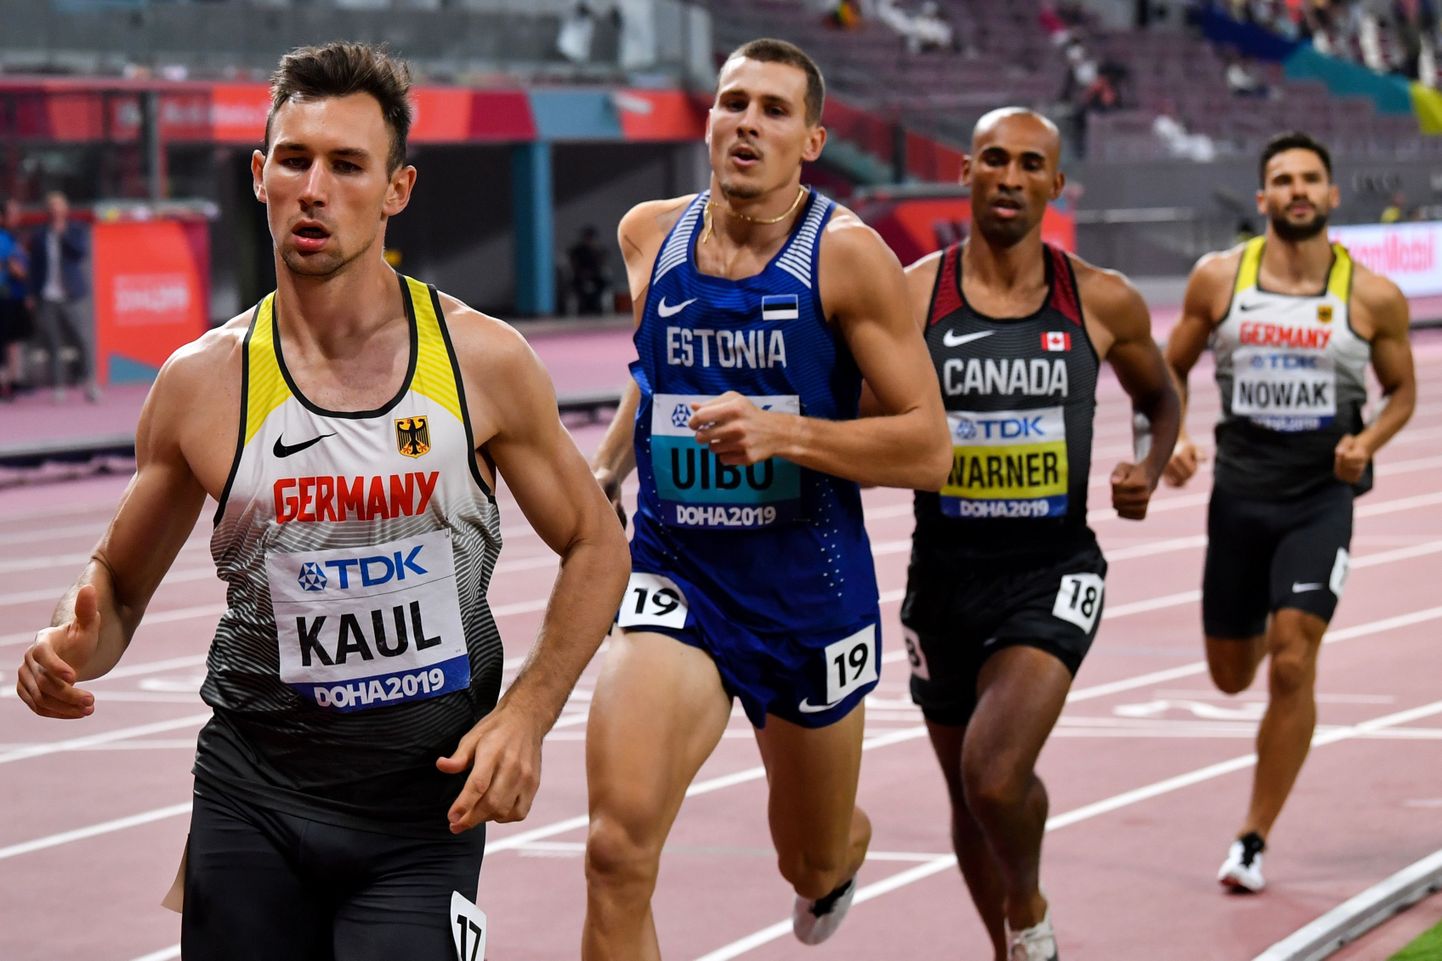 Jõuproovil osaleb lisaks Maicel Uibo ja Niklas Kaulile ka maailmarekordimees Kevin Mayer.